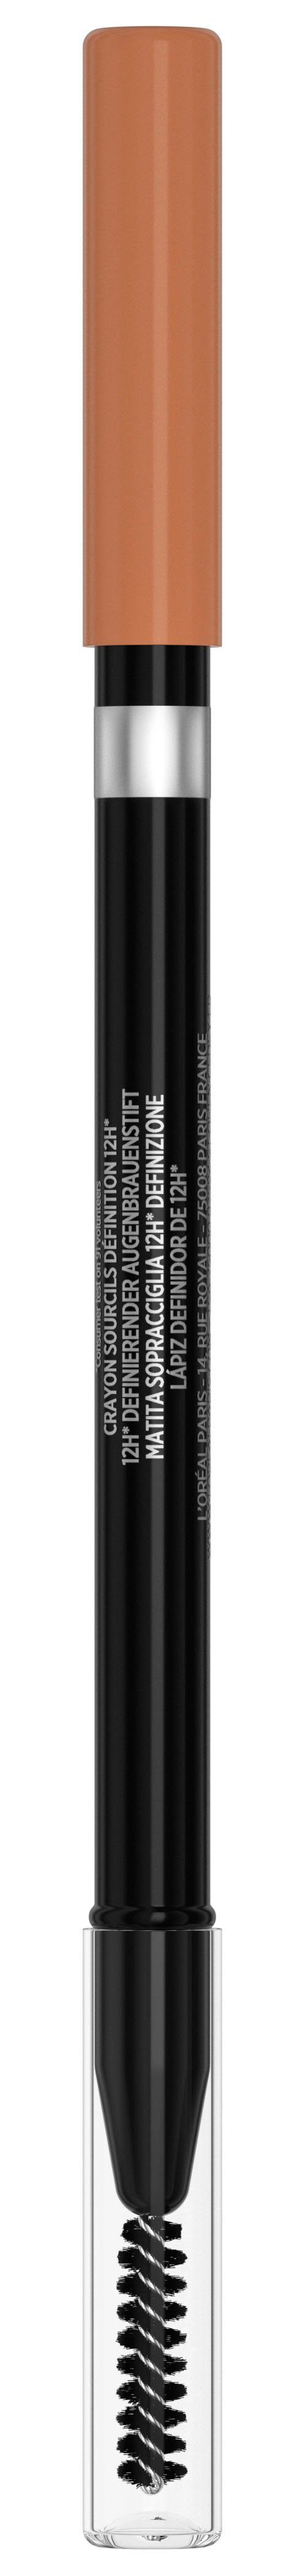 L'ORÉAL PARIS Augenbrauen-Stift Brow Wimpern 302 brunette perfekt light Nr. geformte für Designer, Browlliner Artist